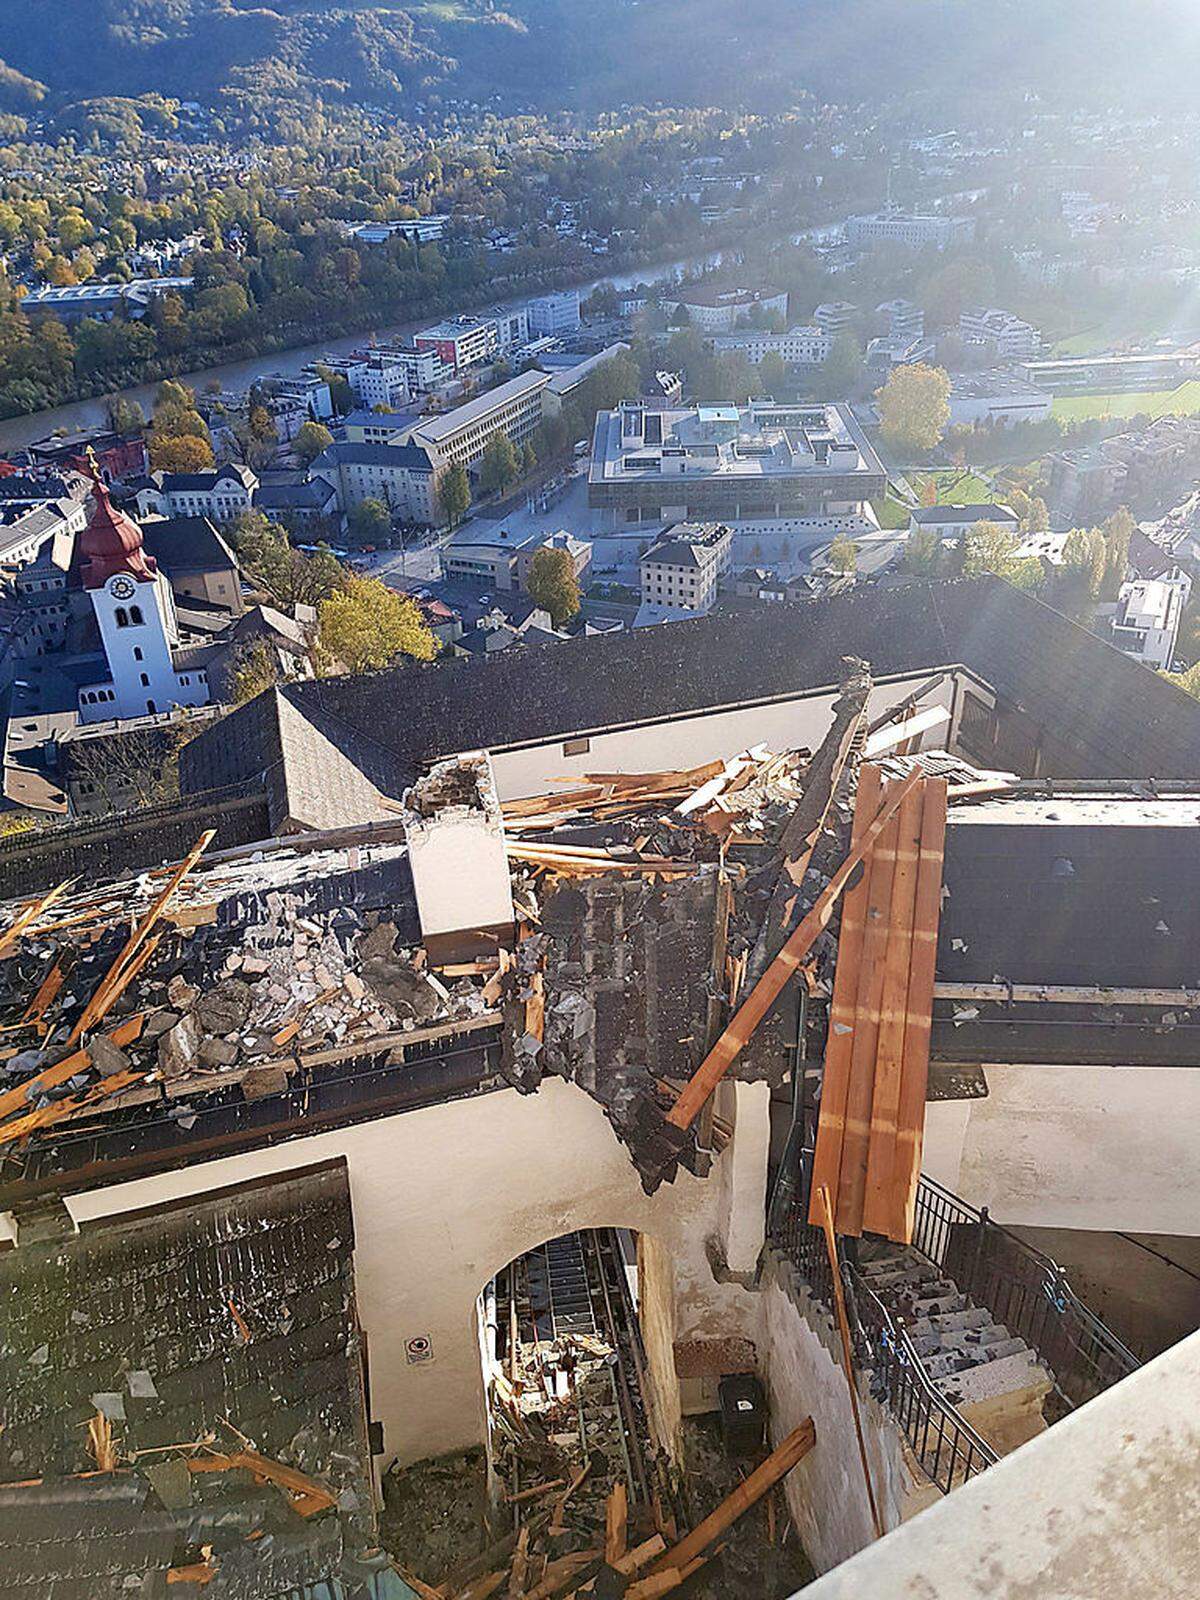 Der Sturm erreichte Dienstagmorgen auch die Stadt Salzburg und richtete große Schäden an. Auf der Festung Hohensalzburg wurden ein großer Teil des Daches abgedeckt.